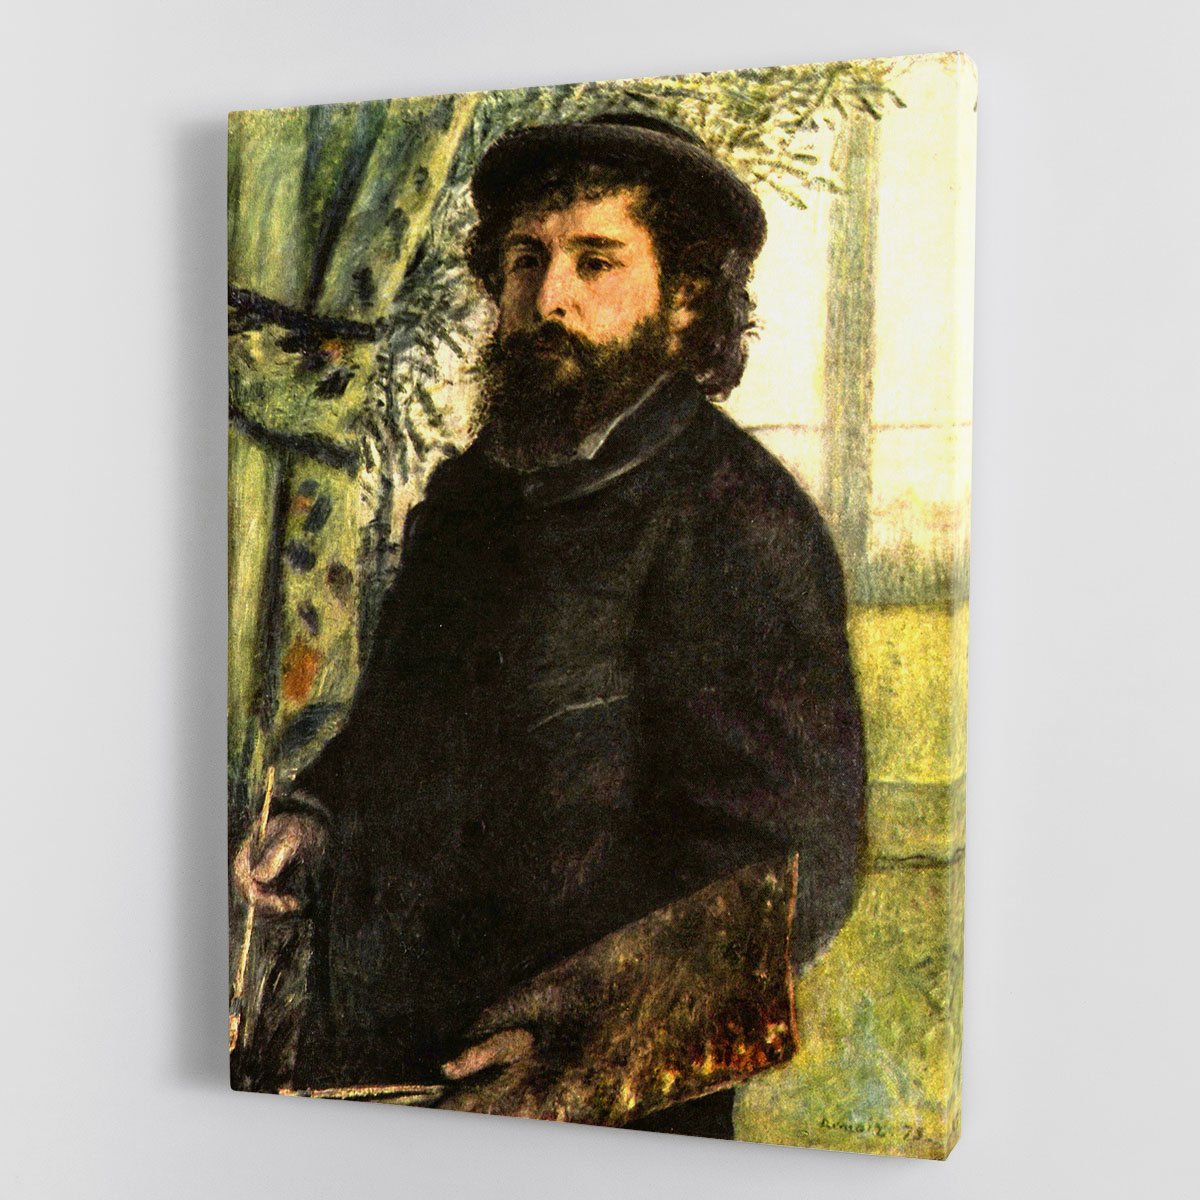 Portrait of the painter Claude Monet by Renoir Canvas Print or Poster